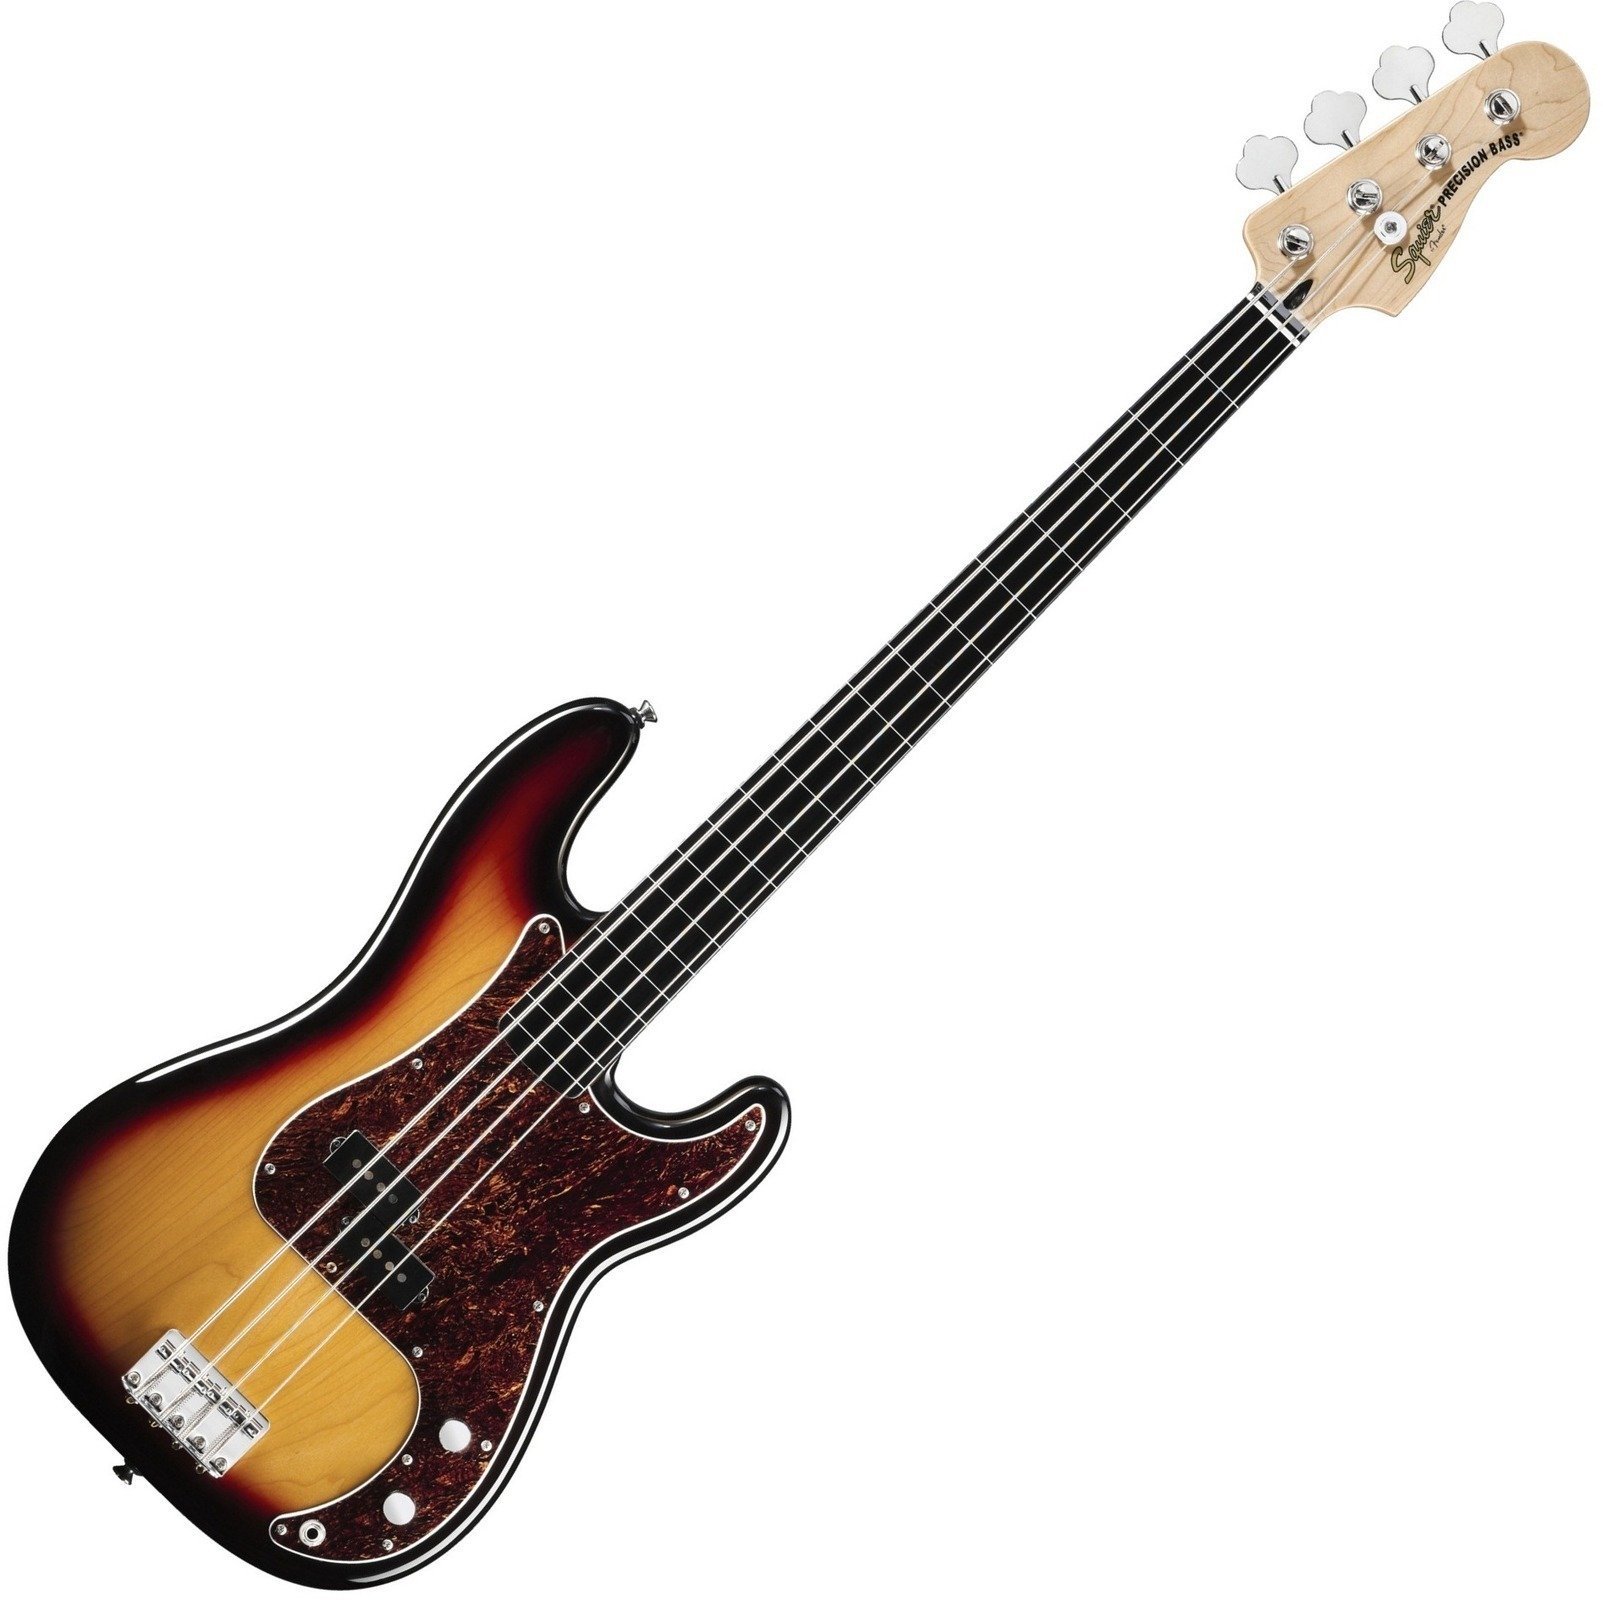 Basso Fretless Fender Squier Vintage Modified Precision Bass Fretless 3 Color Sunburst